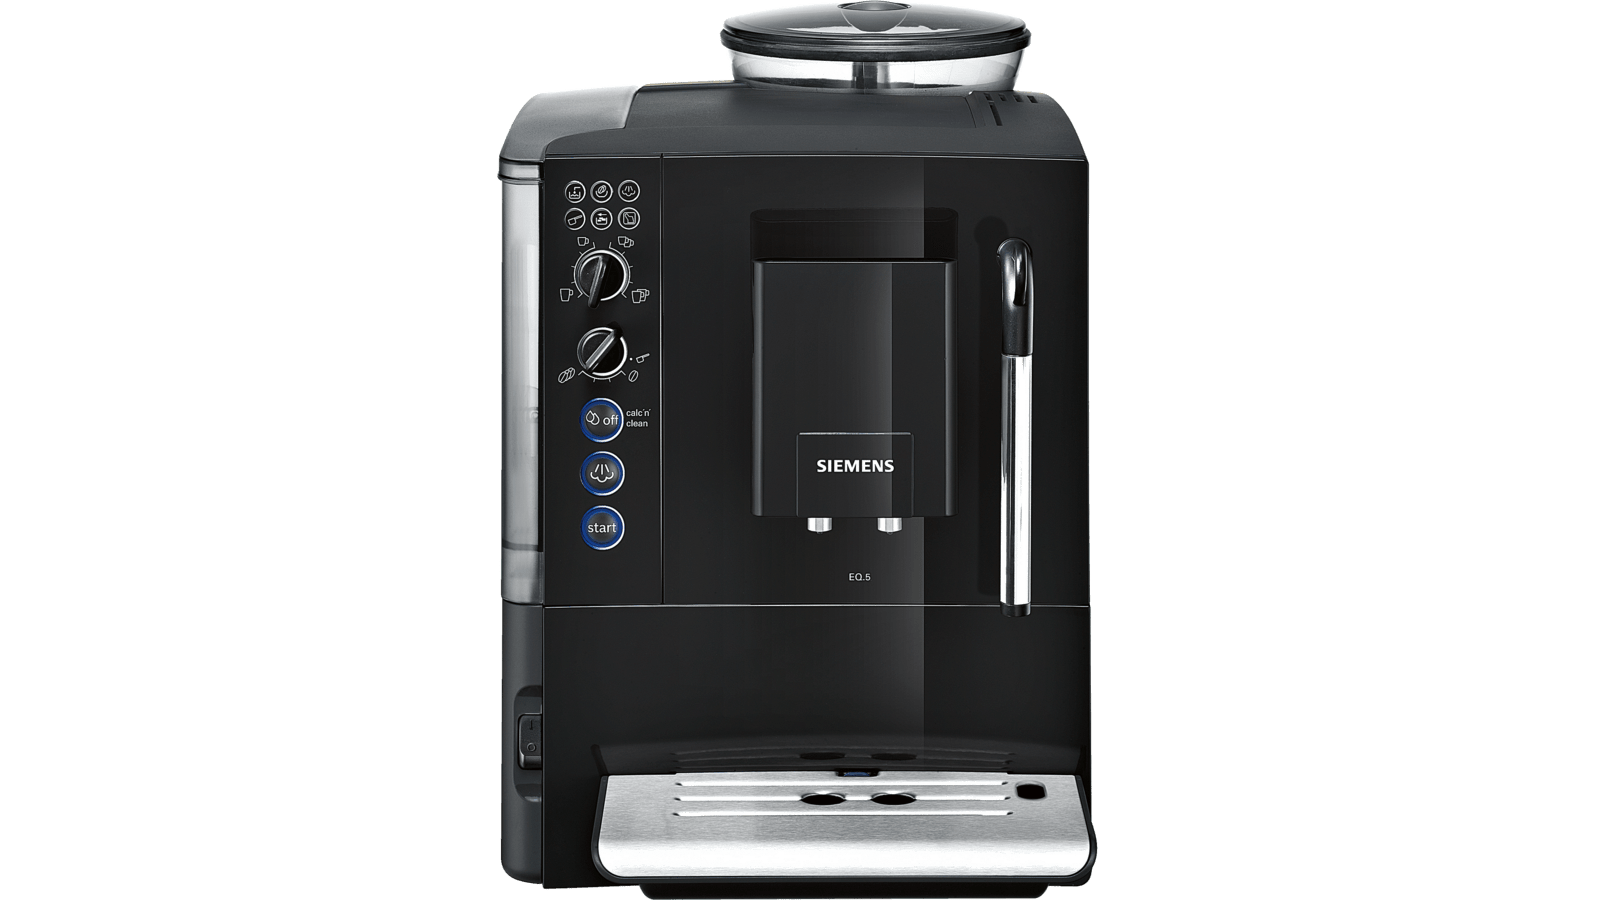 TE501205RW Fuldautomatisk kaffemaskine | DK